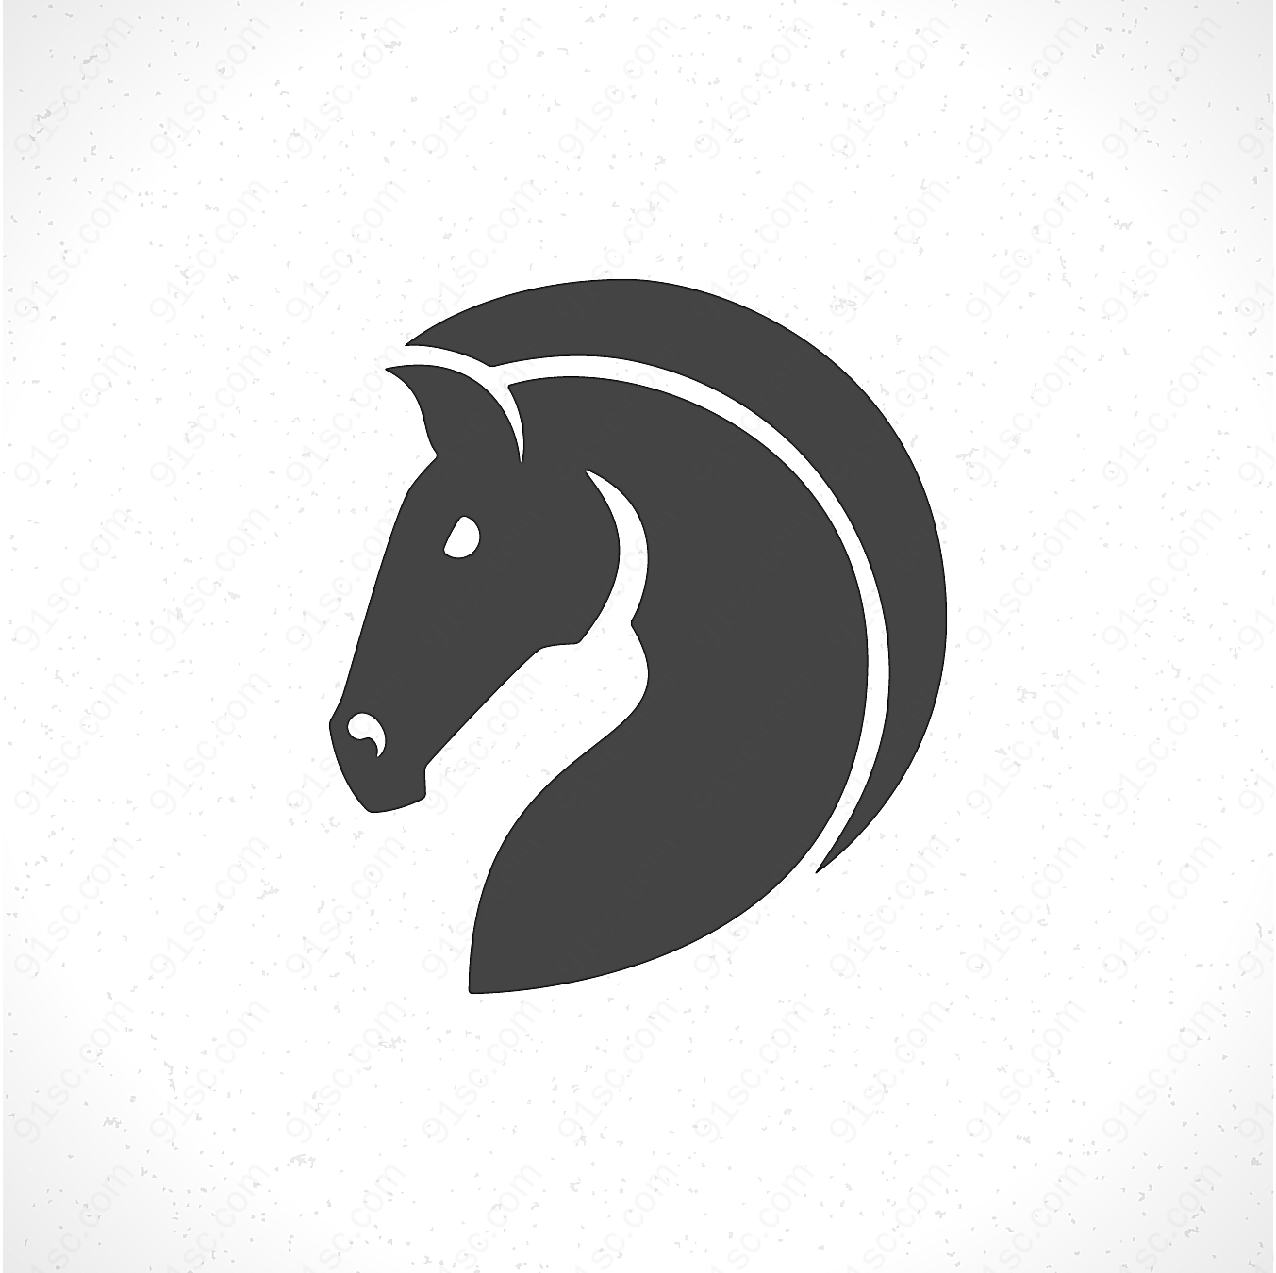 马头形状标志矢量logo图形